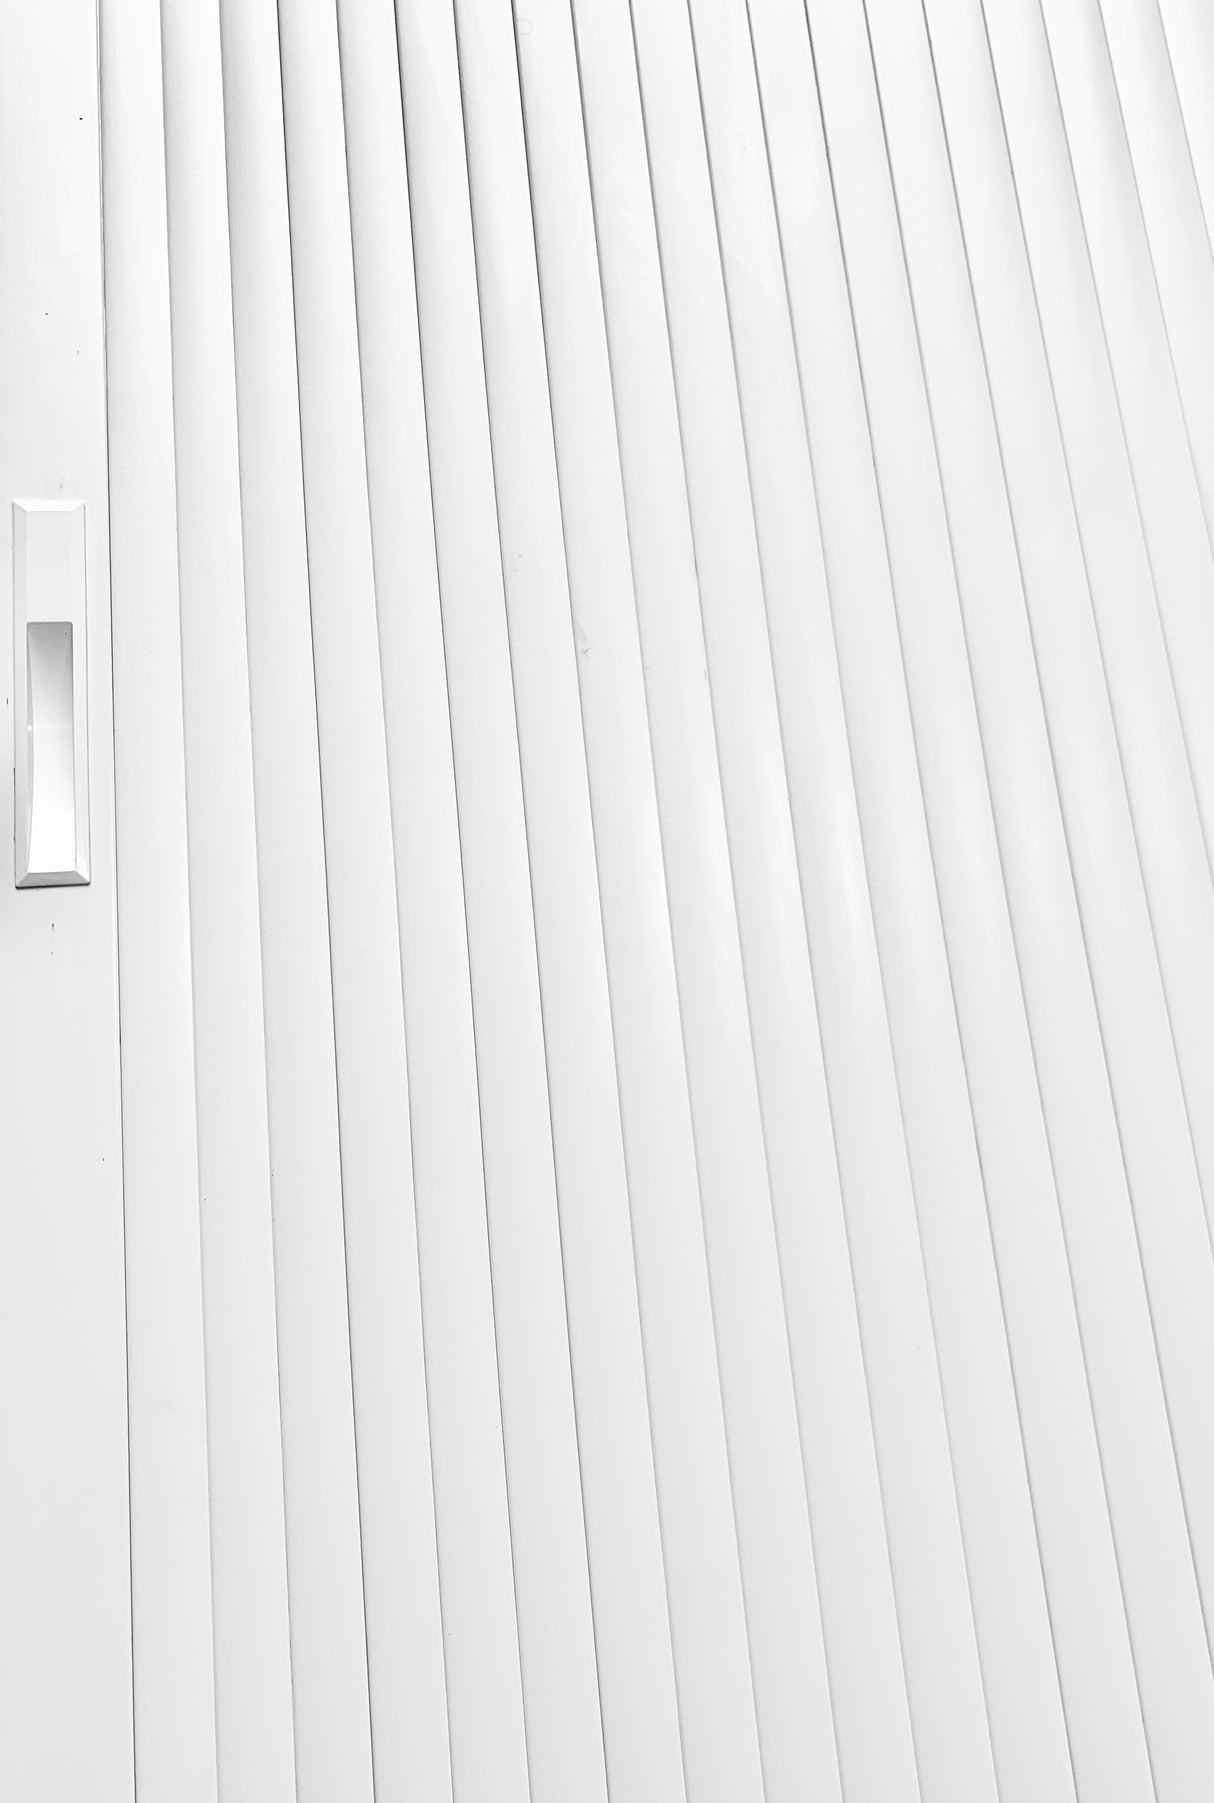 Tambour Door White Door kit - White handle 1500mm to 2000mm tall options-TAMdour-Black door,door,shower,shower door,Tambour door,Tambour shower door,White door,white door with sliver handle